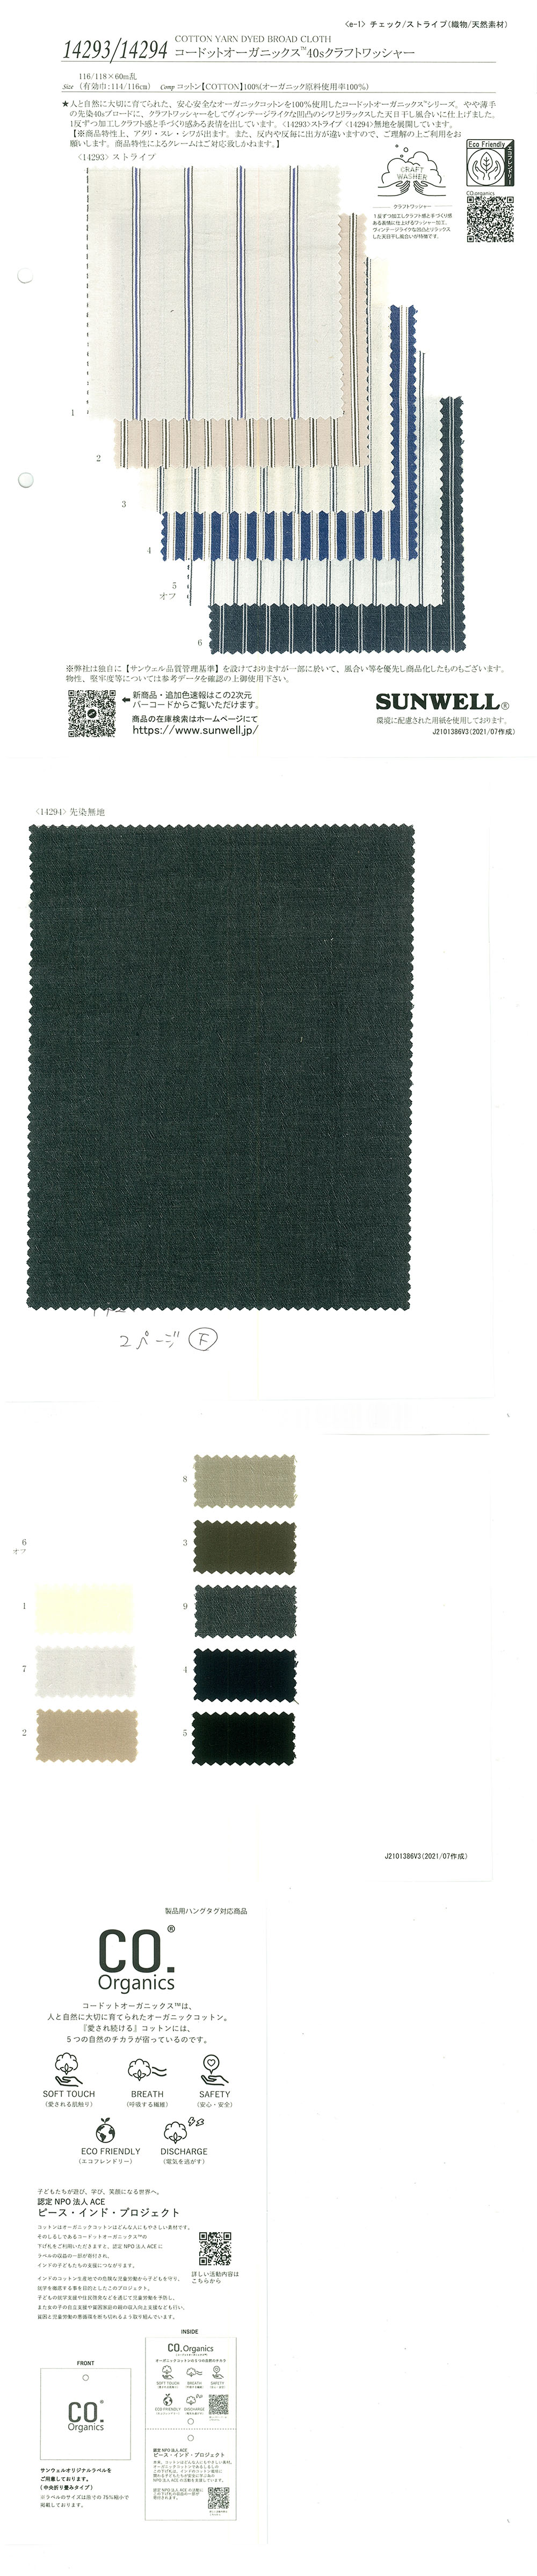 14293 Cordot Organics (R) 40 Listra Artesanal De Fio único[Têxtil / Tecido] SUNWELL